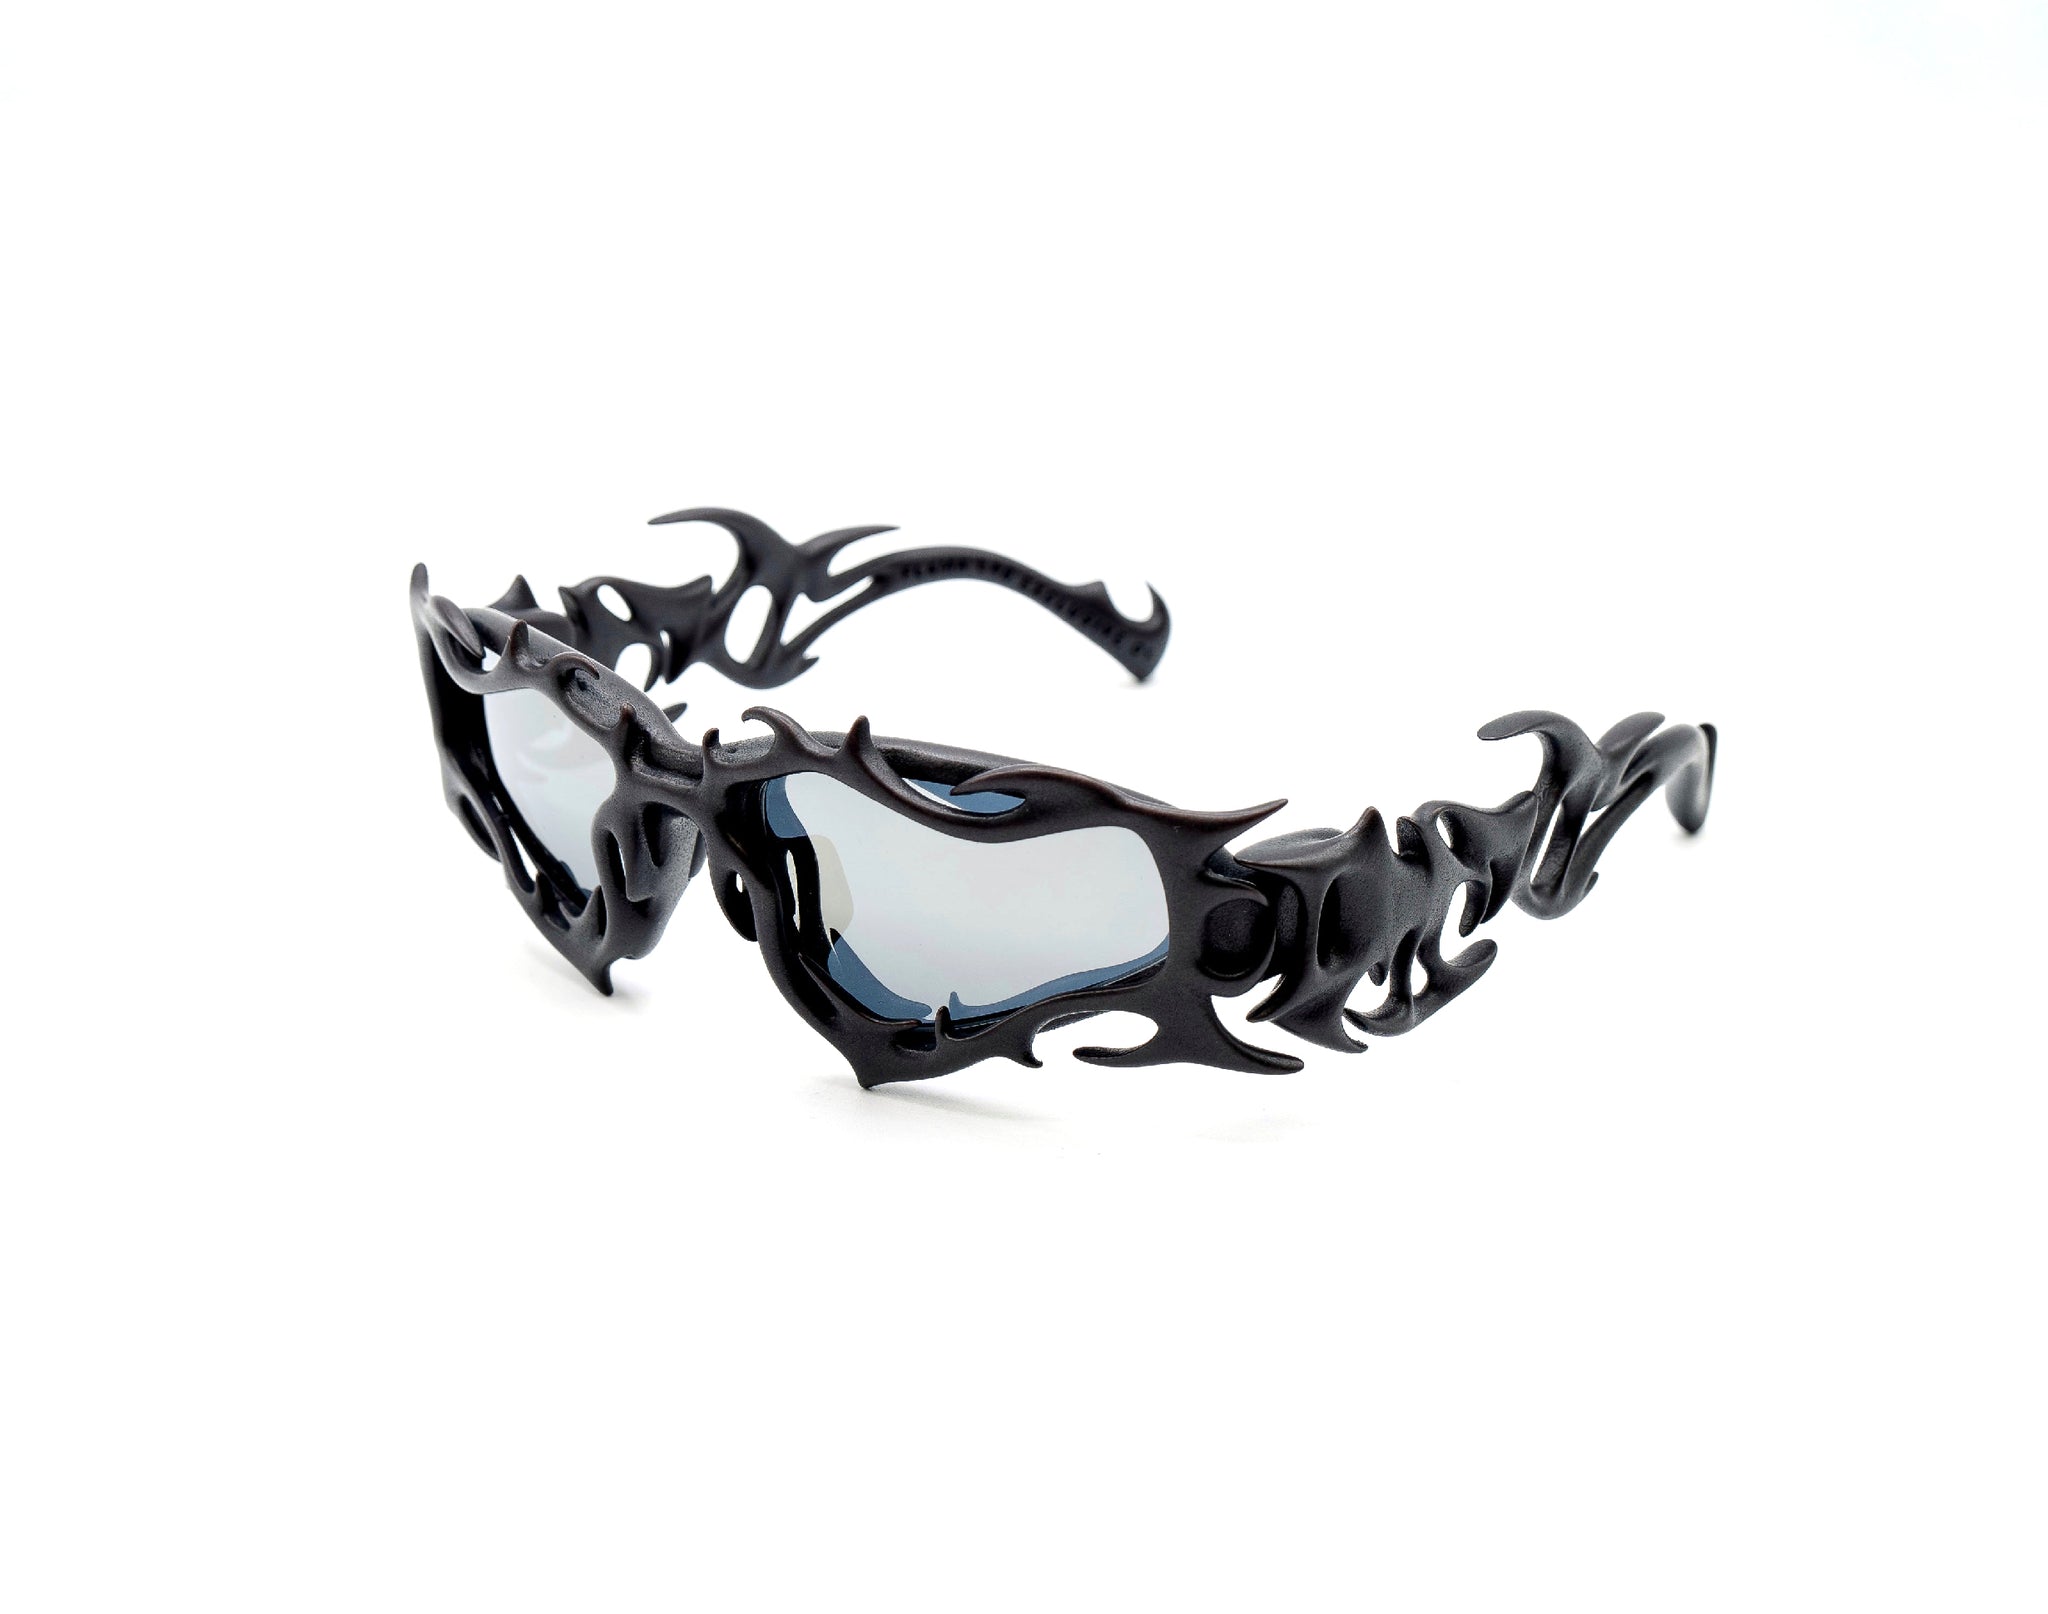 Gafas de diseño neo-cyberpunk de impresión 3D con lentes fotocromáticas